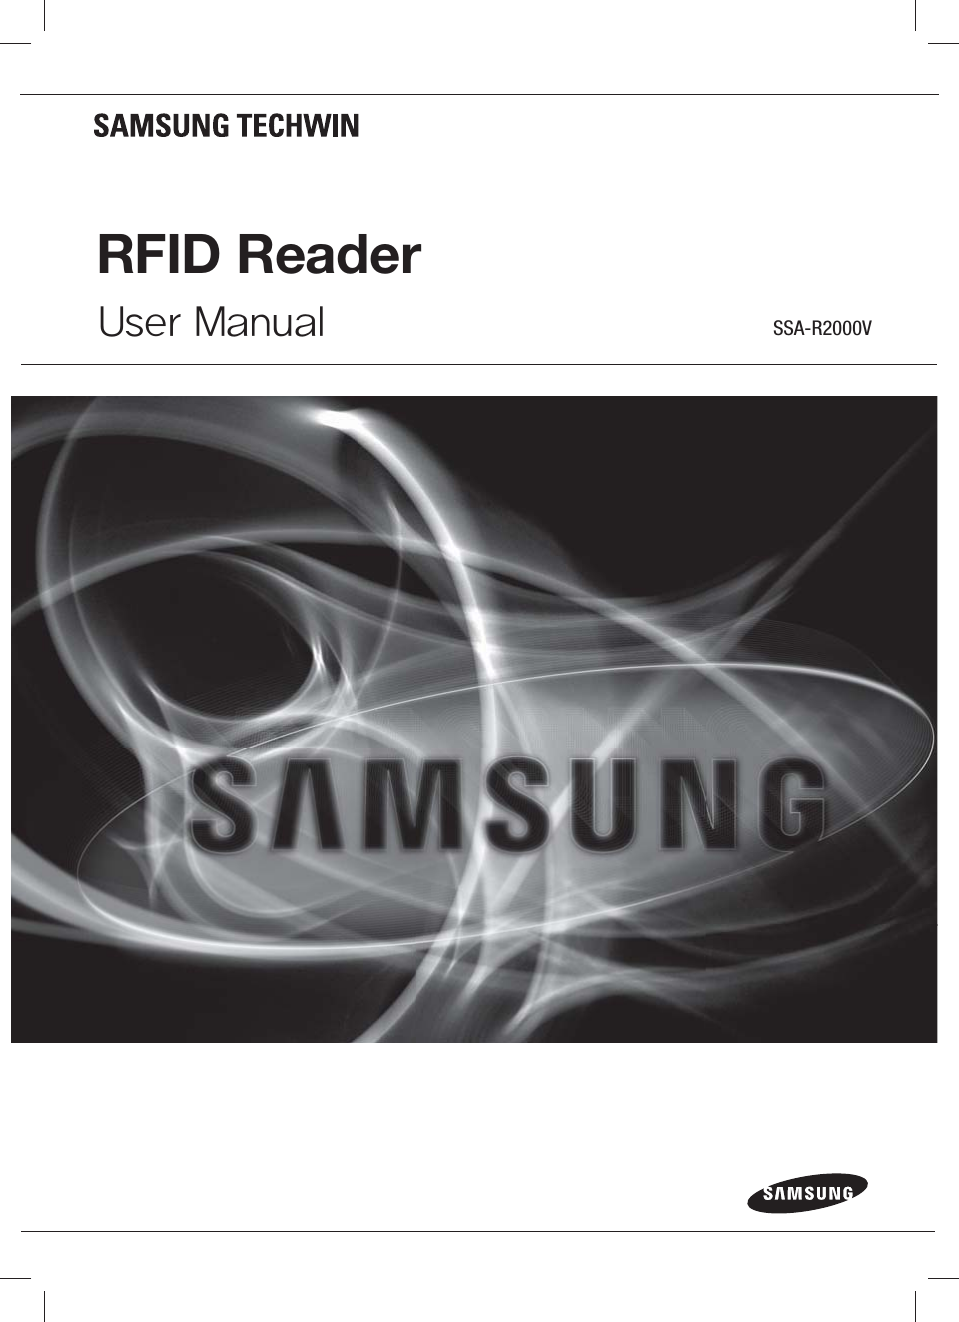 RFID ReaderUser Manual SSA-R2000V